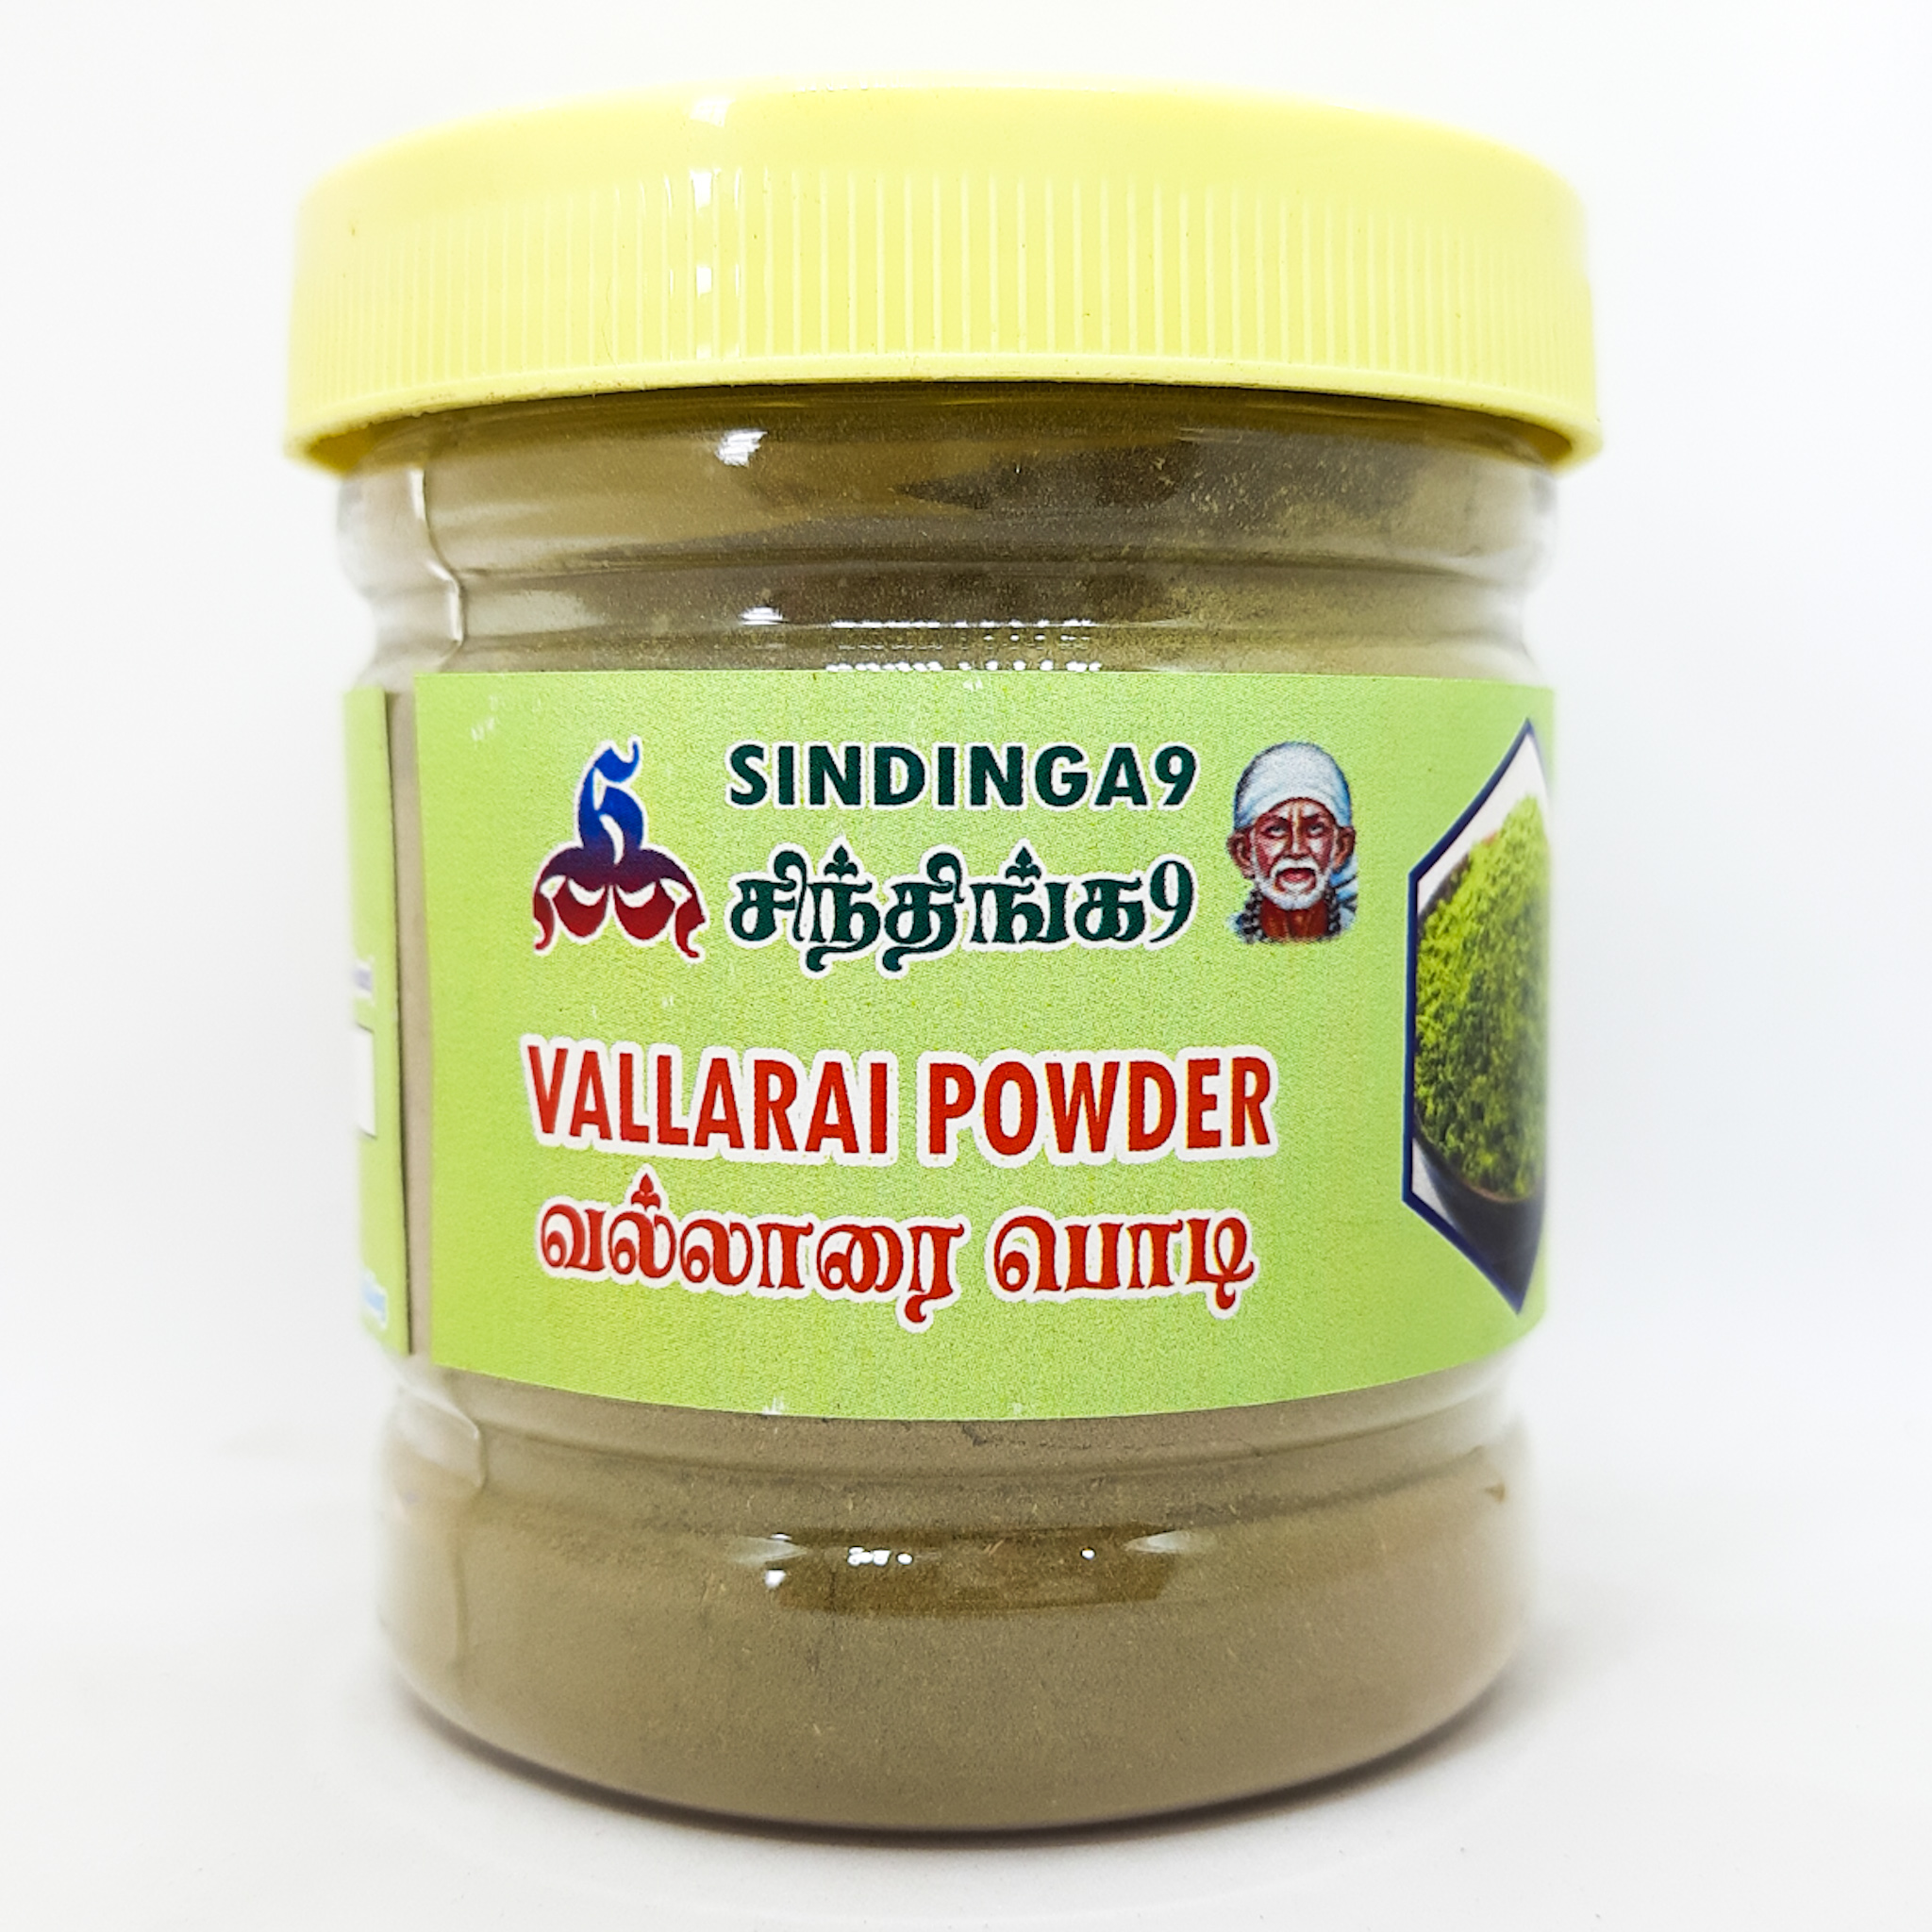 Vallarai powder 100g